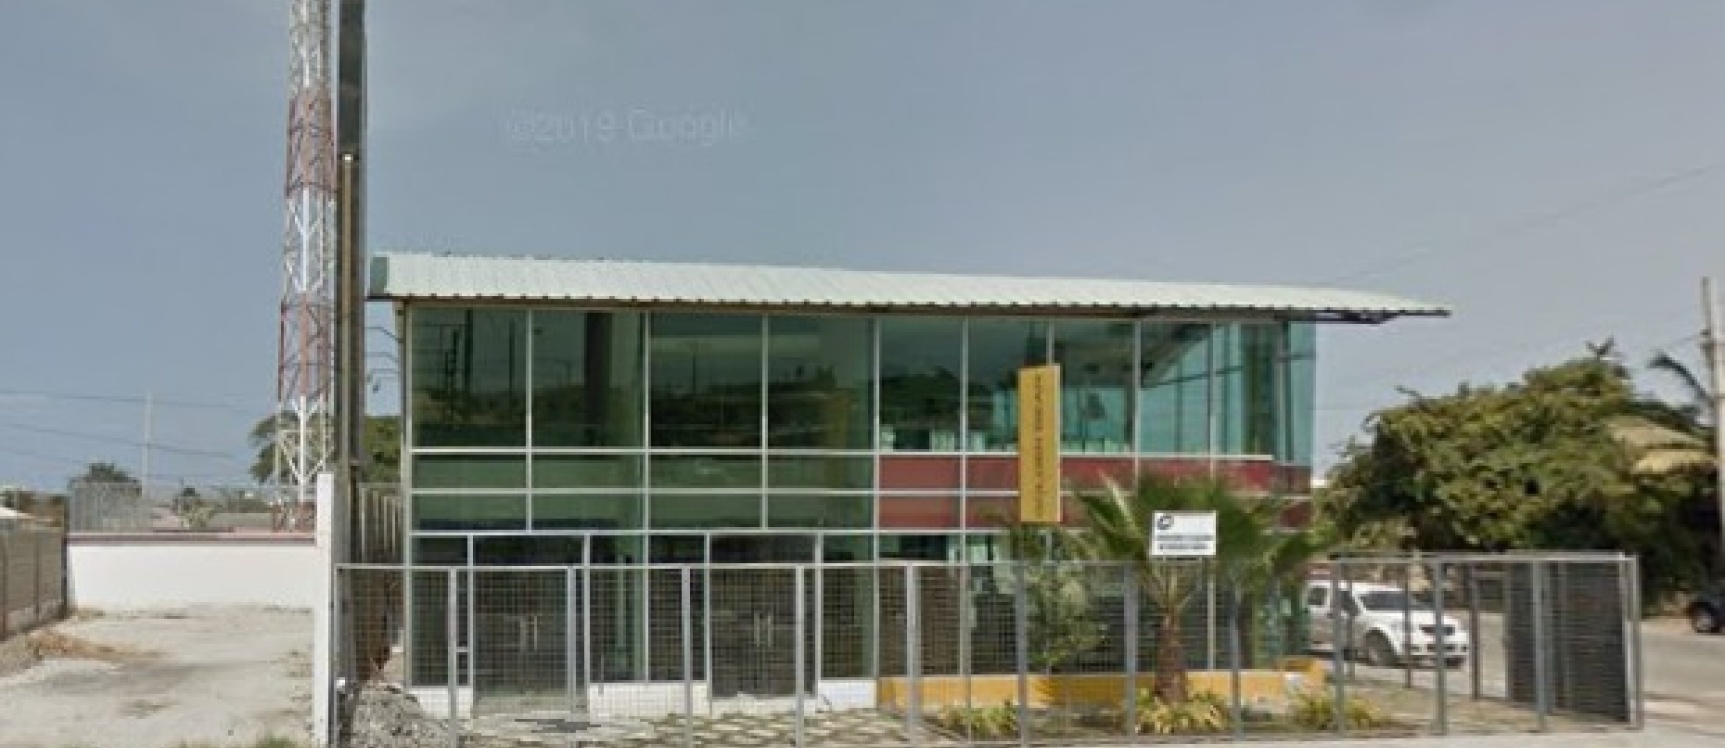 GeoBienes - Local Comercial en venta ubicado en Salinas - Plusvalia Guayaquil Casas de venta y alquiler Inmobiliaria Ecuador